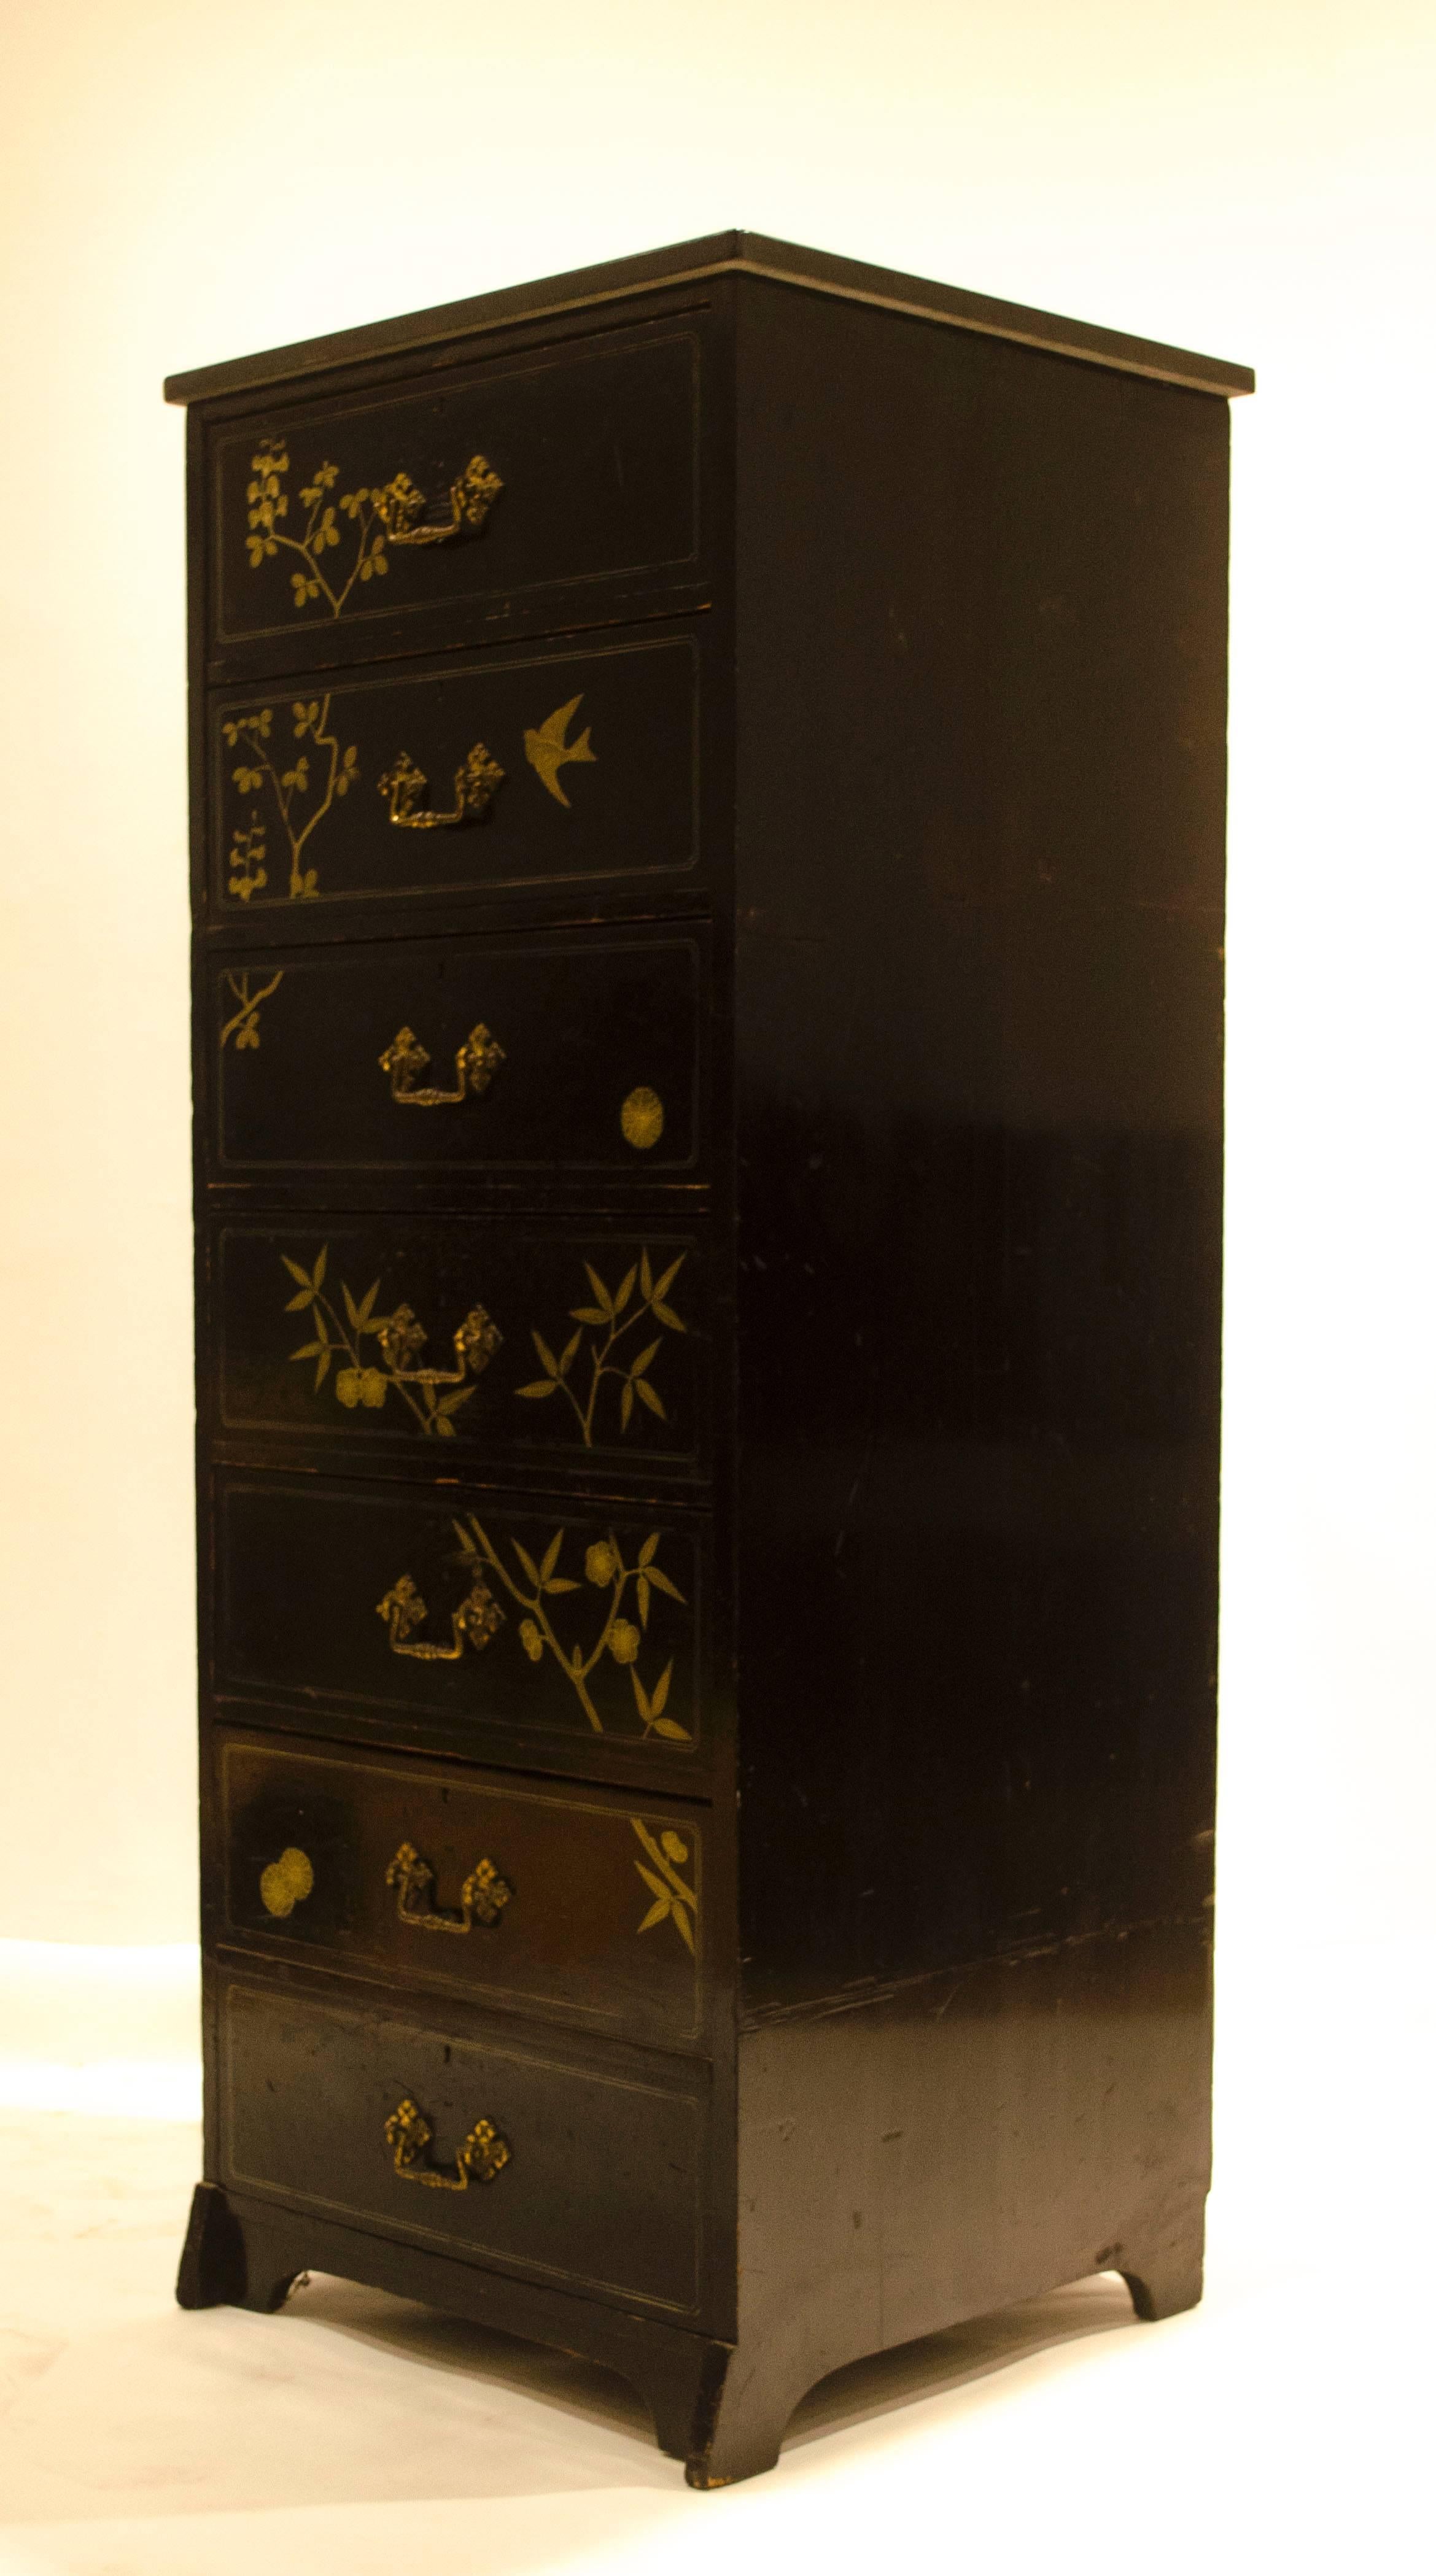 Rare et ancienne commode anglo-japonaise ébonisée, conçue par Daniel Cottier avec des hirondelles peintes en doré, des formes stylisées de bambou et de plantes avec rosettes, avec un plateau en marbre noir plus tardif, le tiroir inférieur étant